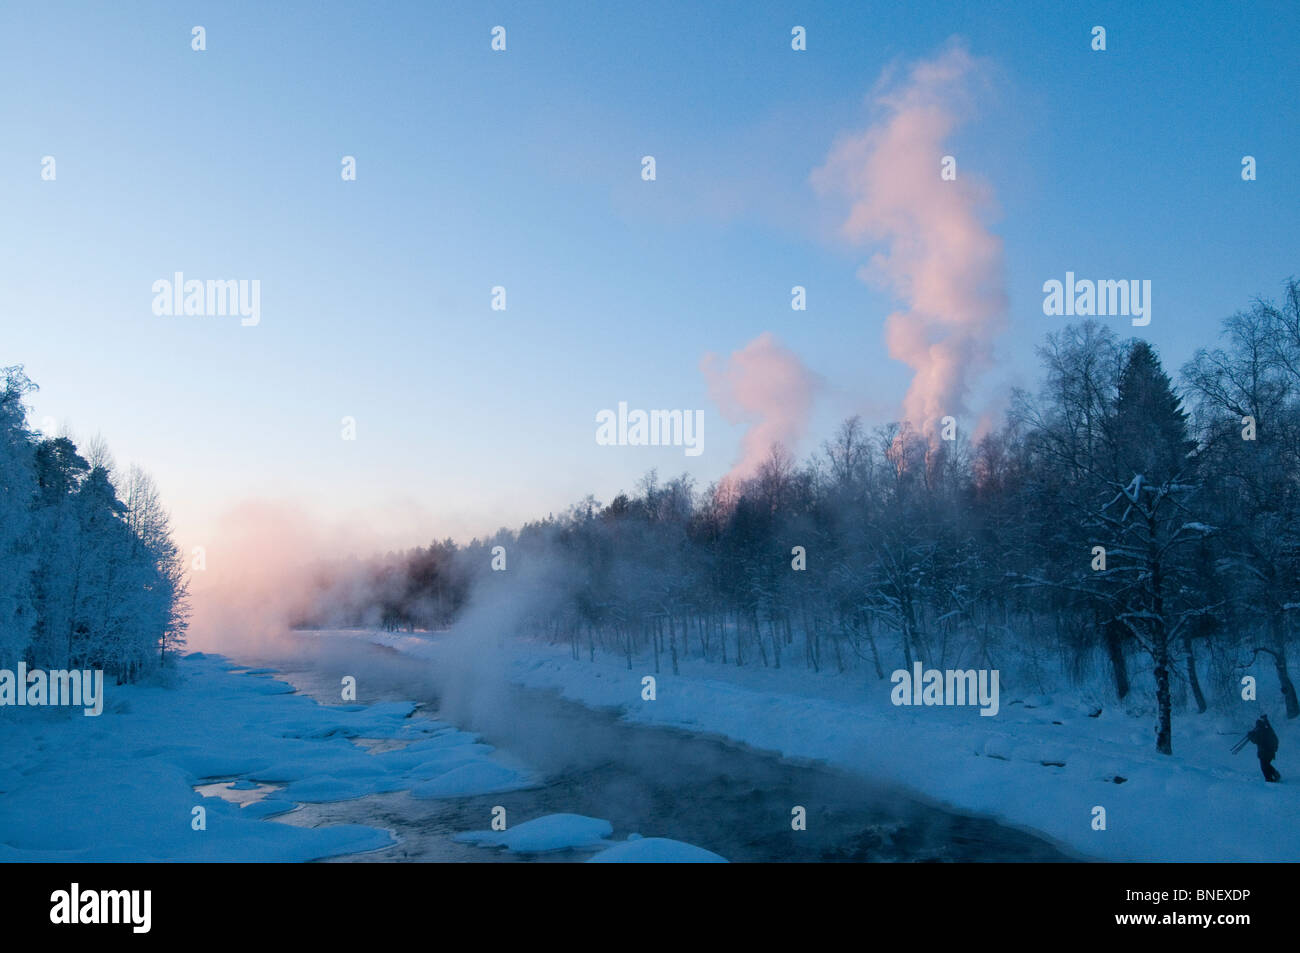 Neblige Aussicht auf die Umgebung des Flusses in Kuhmo, Finnland, bei Sonnenuntergang im Winter, alle in der Nähe Vegetation durch kondensierte Eis aufgrund extrem niedriger Temperaturen bedeckt. Stockfoto